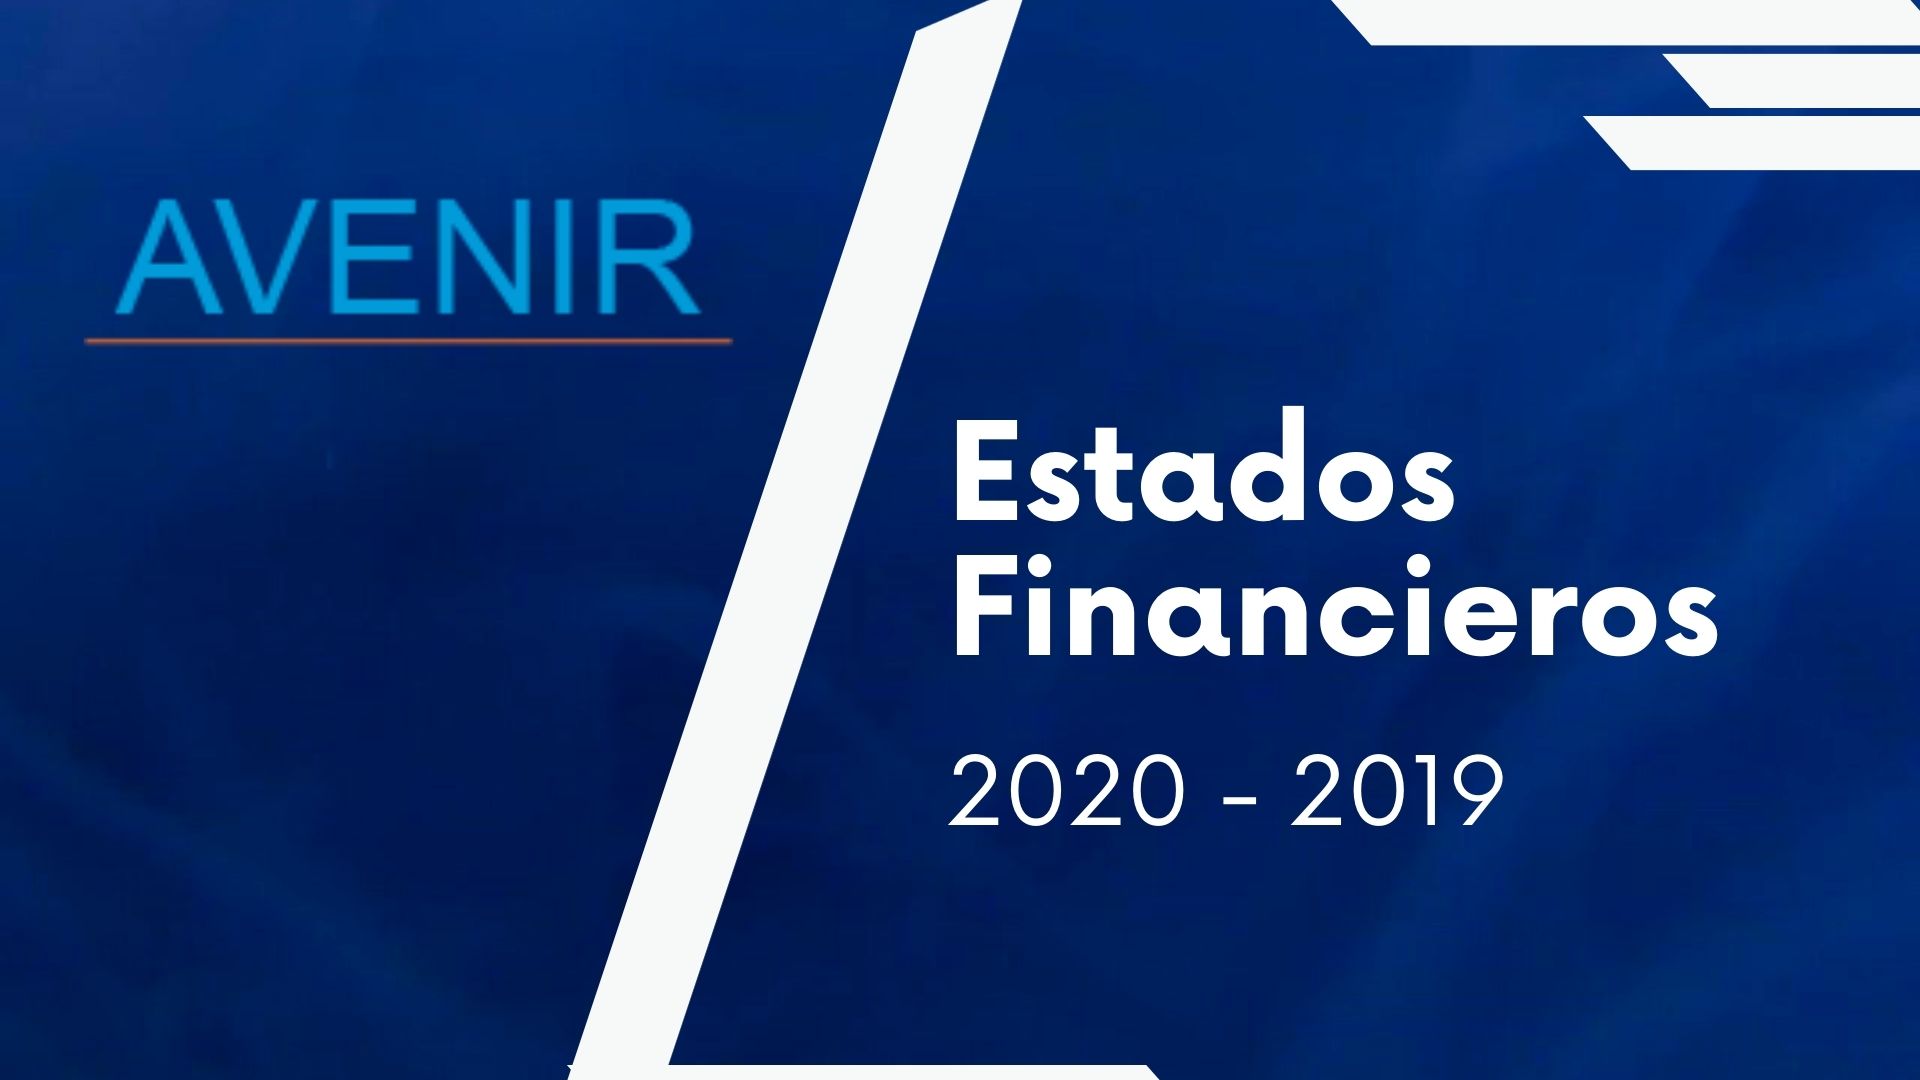 avenir-salud-contenido-estados-financieros-2020-2019